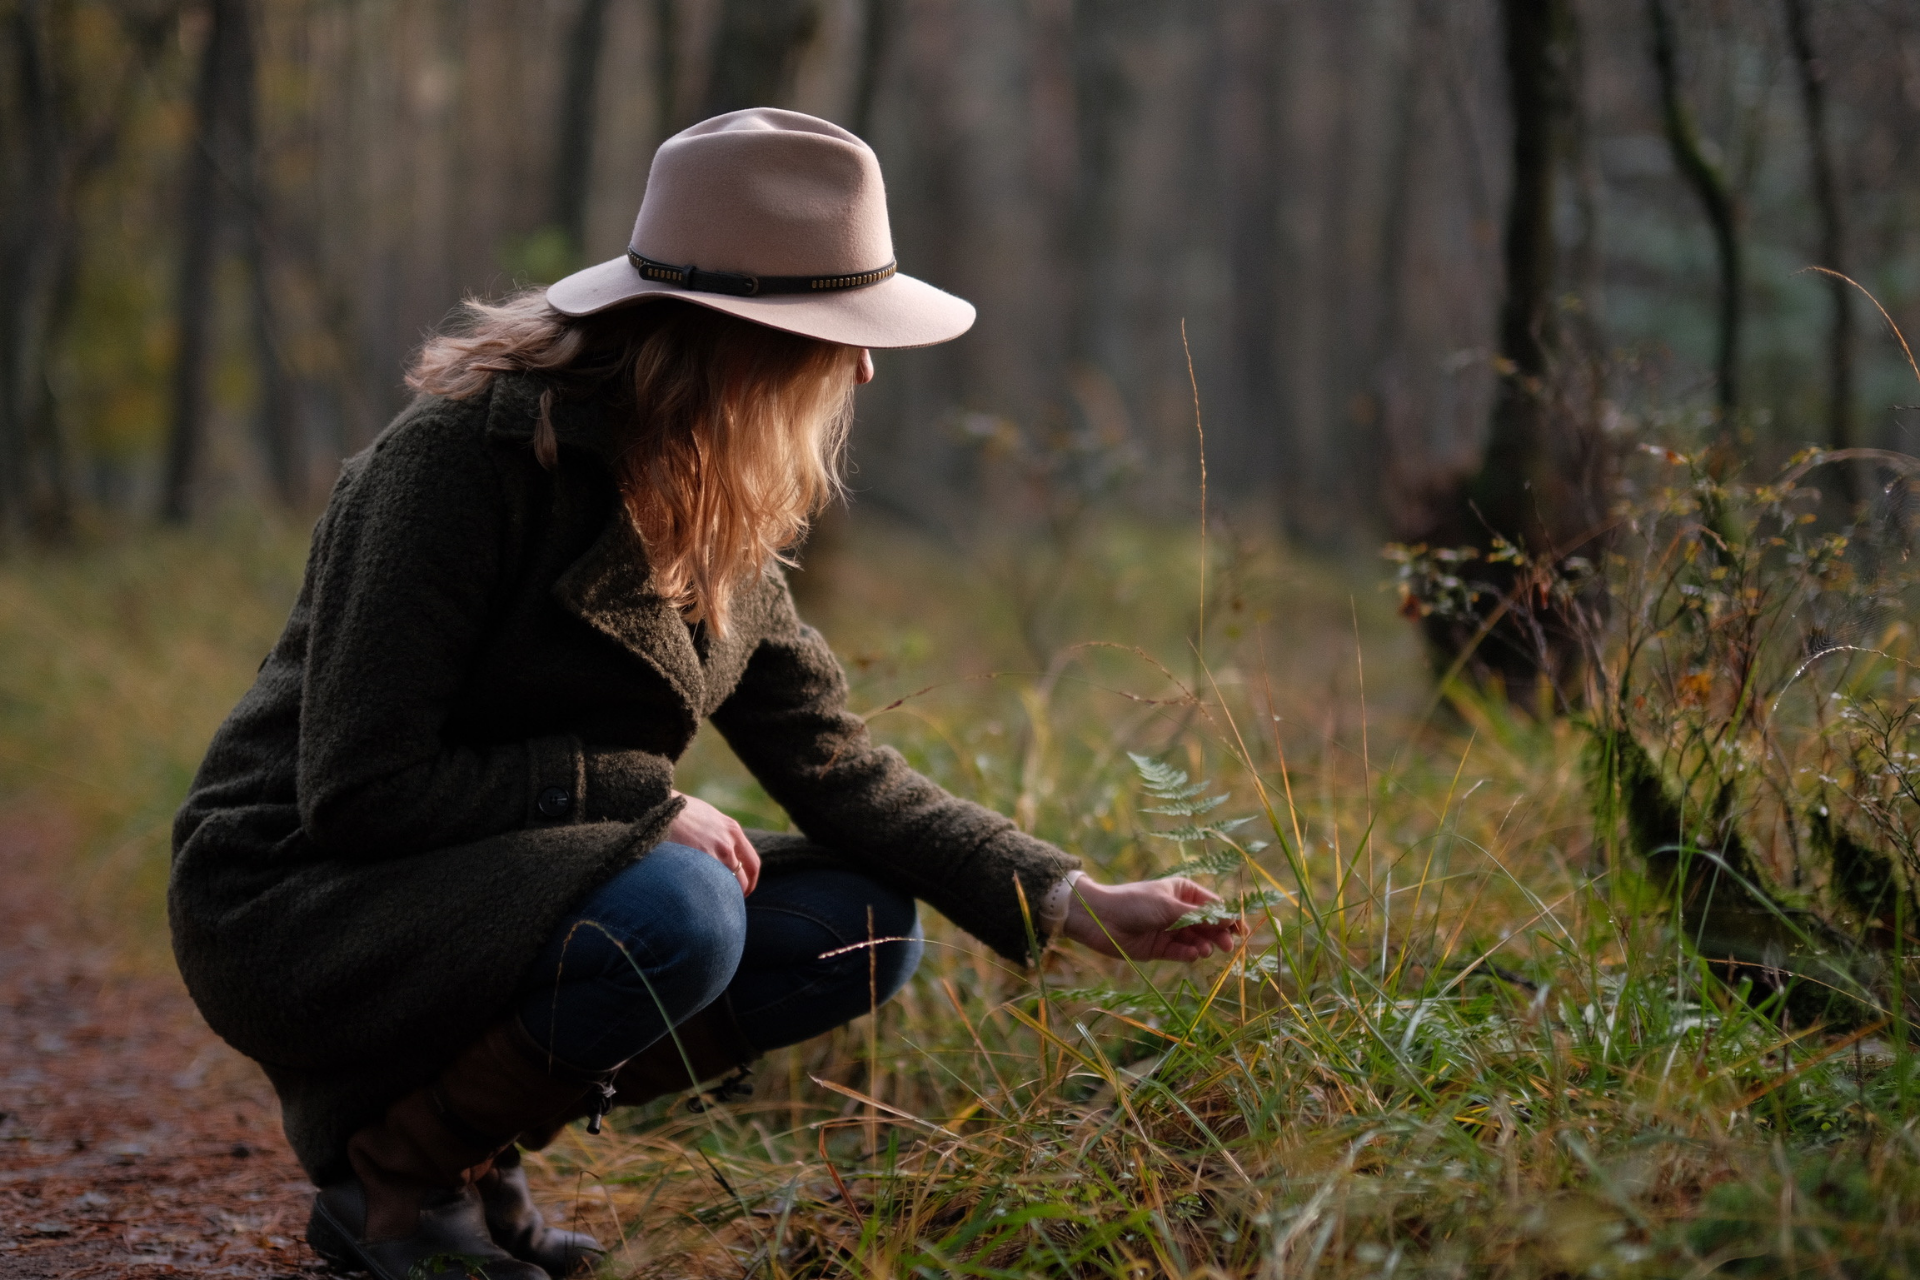 Vrouw met hoed in bos